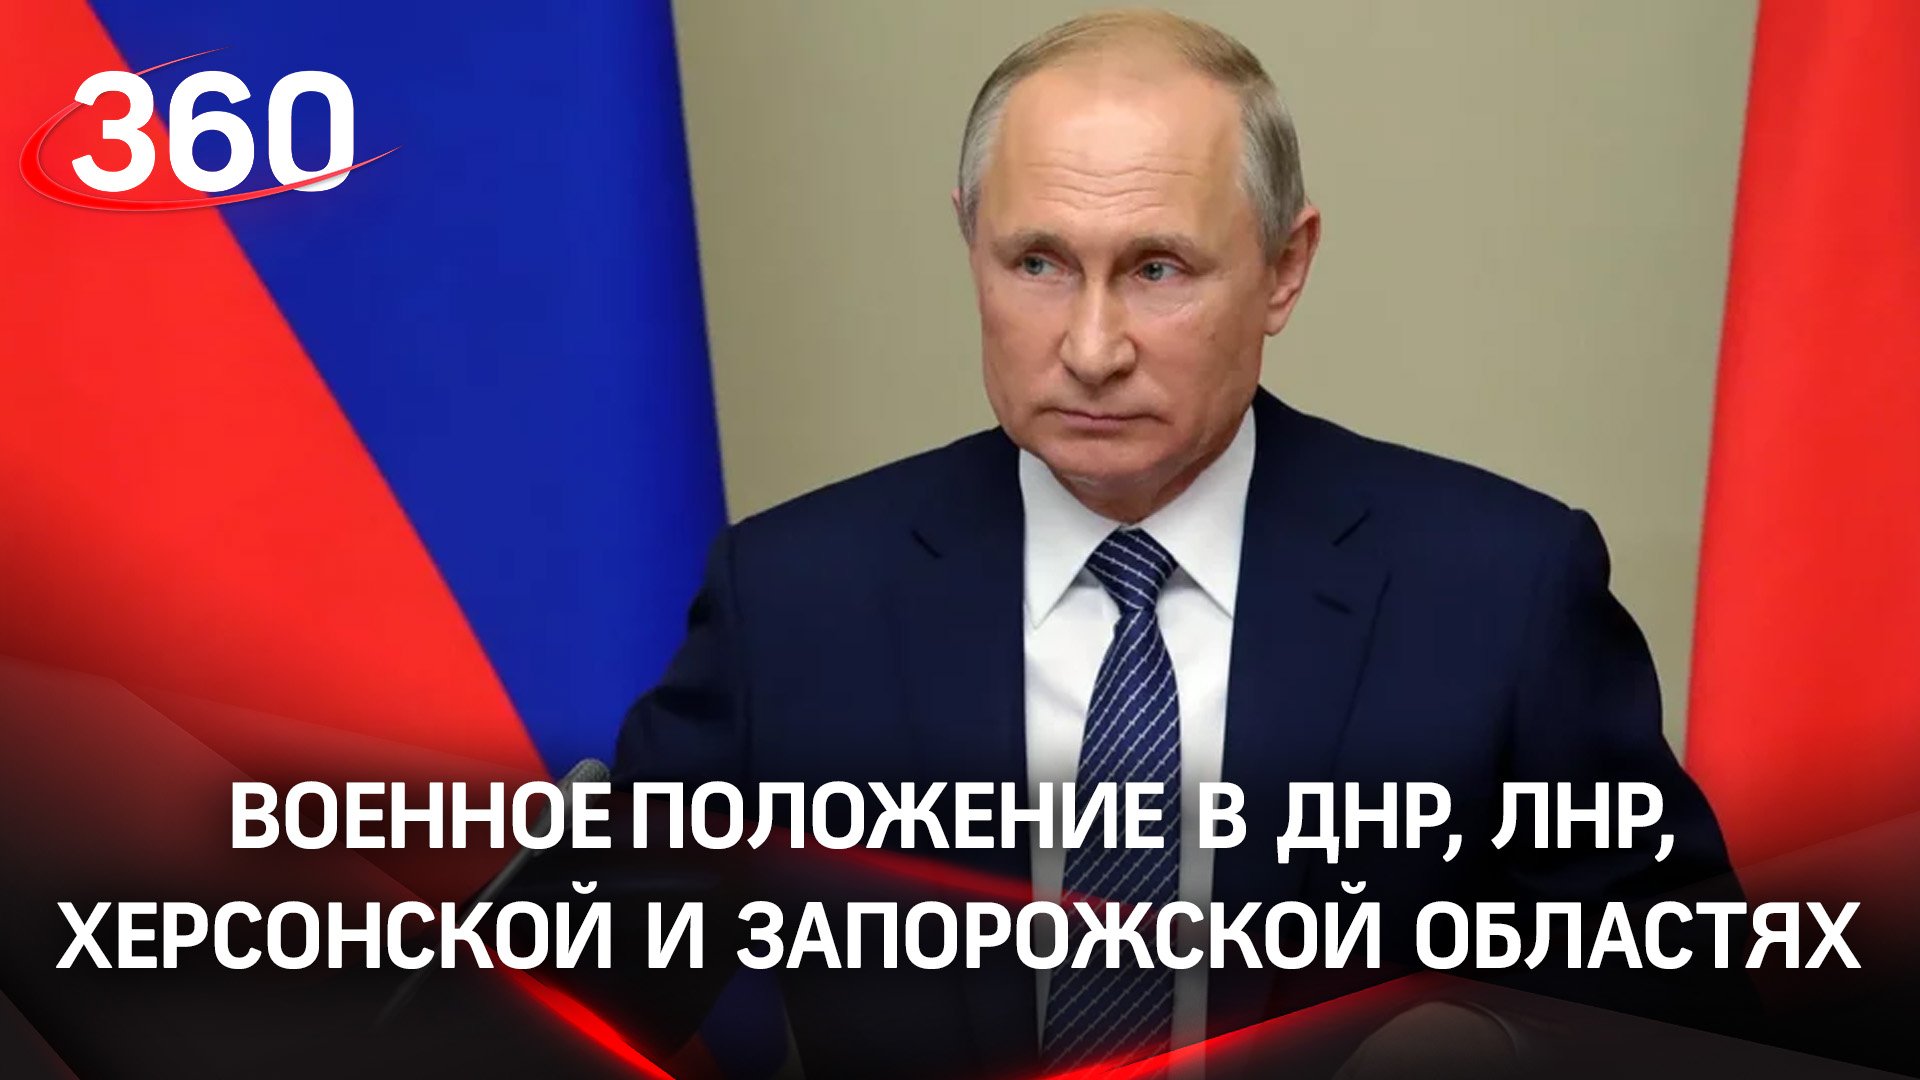 Путин объявил введение военного положения в ДНР, ЛНР, Херсонской и Запорожской областях